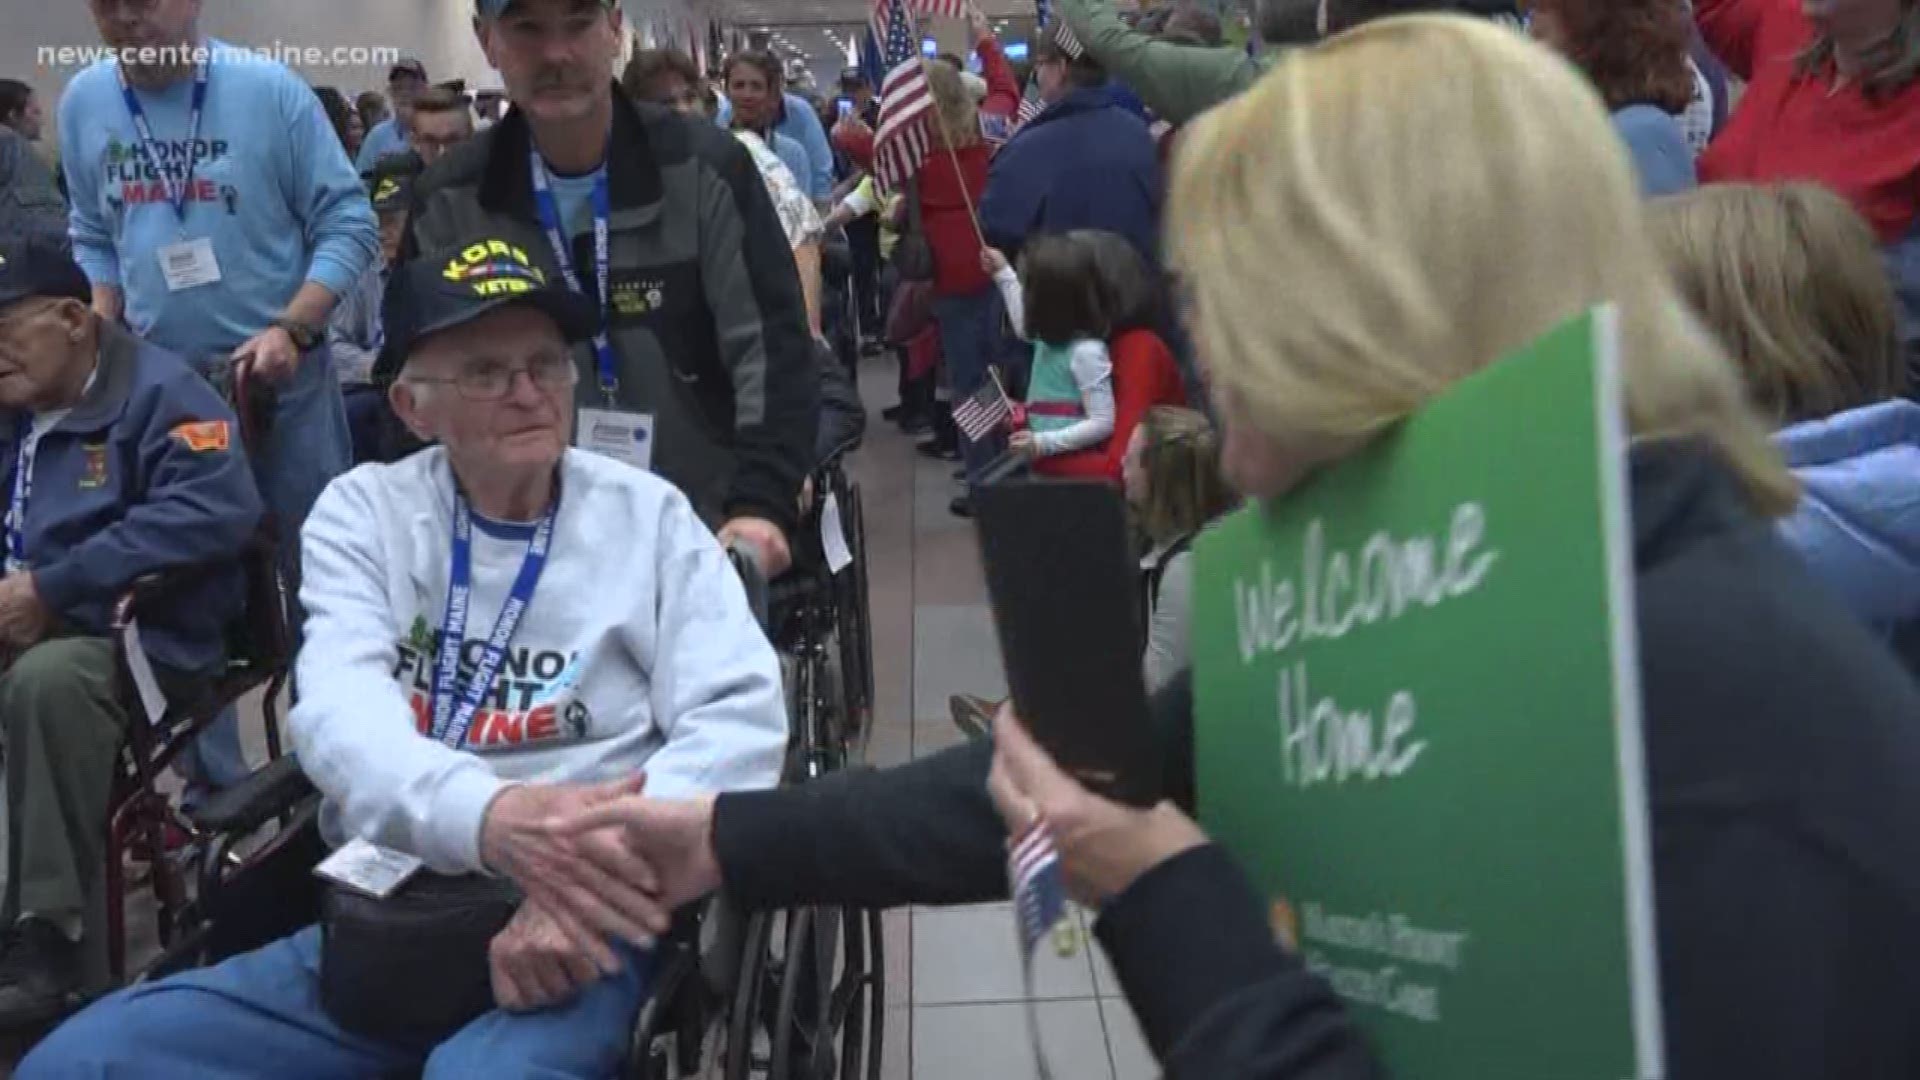 Honor Flight Maine Veterans welcomed home